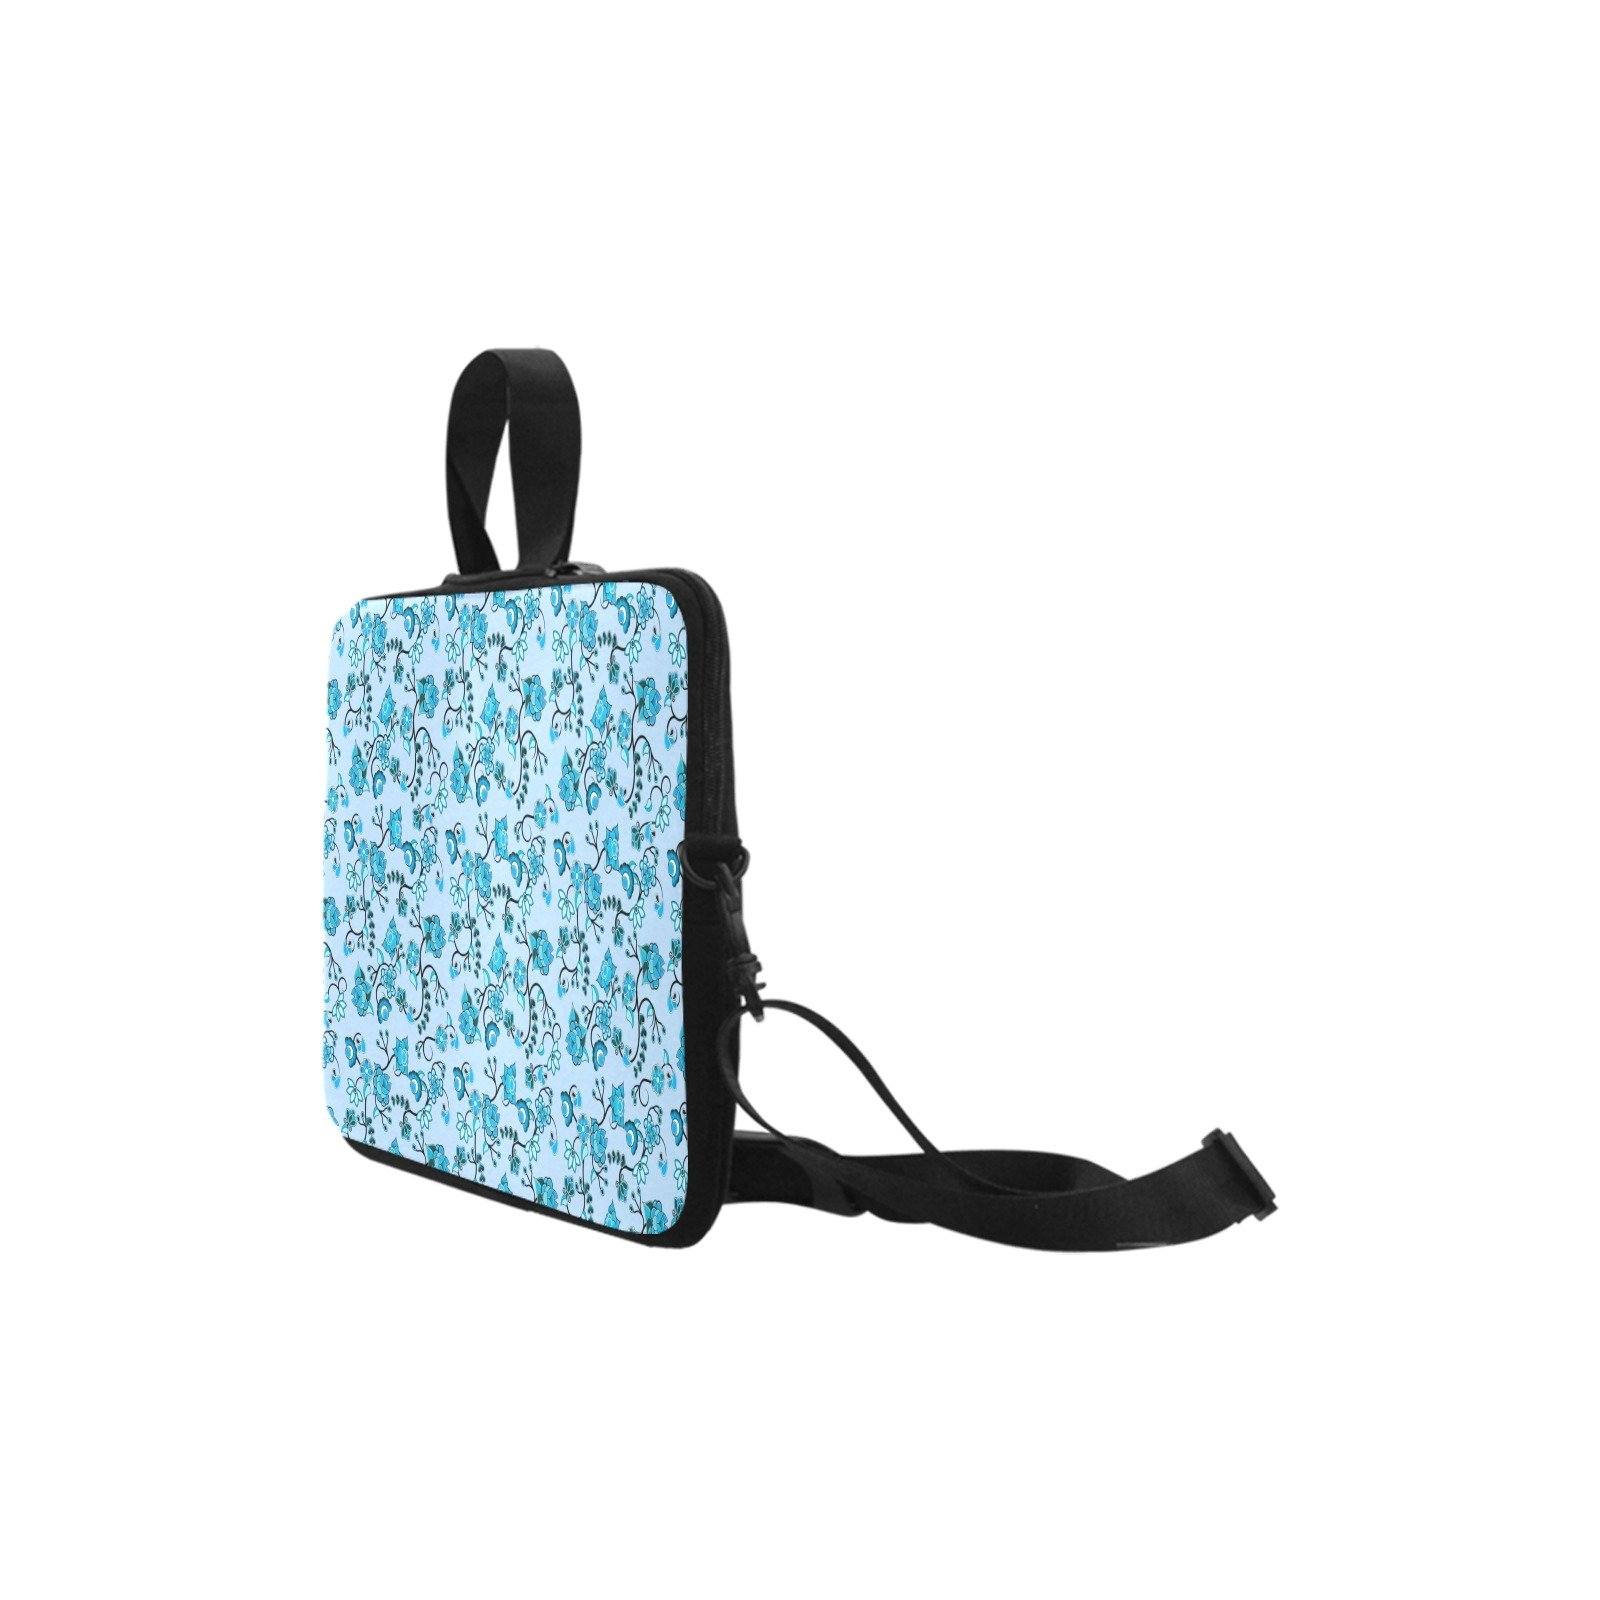 Blue Floral Amour Laptop Handbags 11" bag e-joyer 